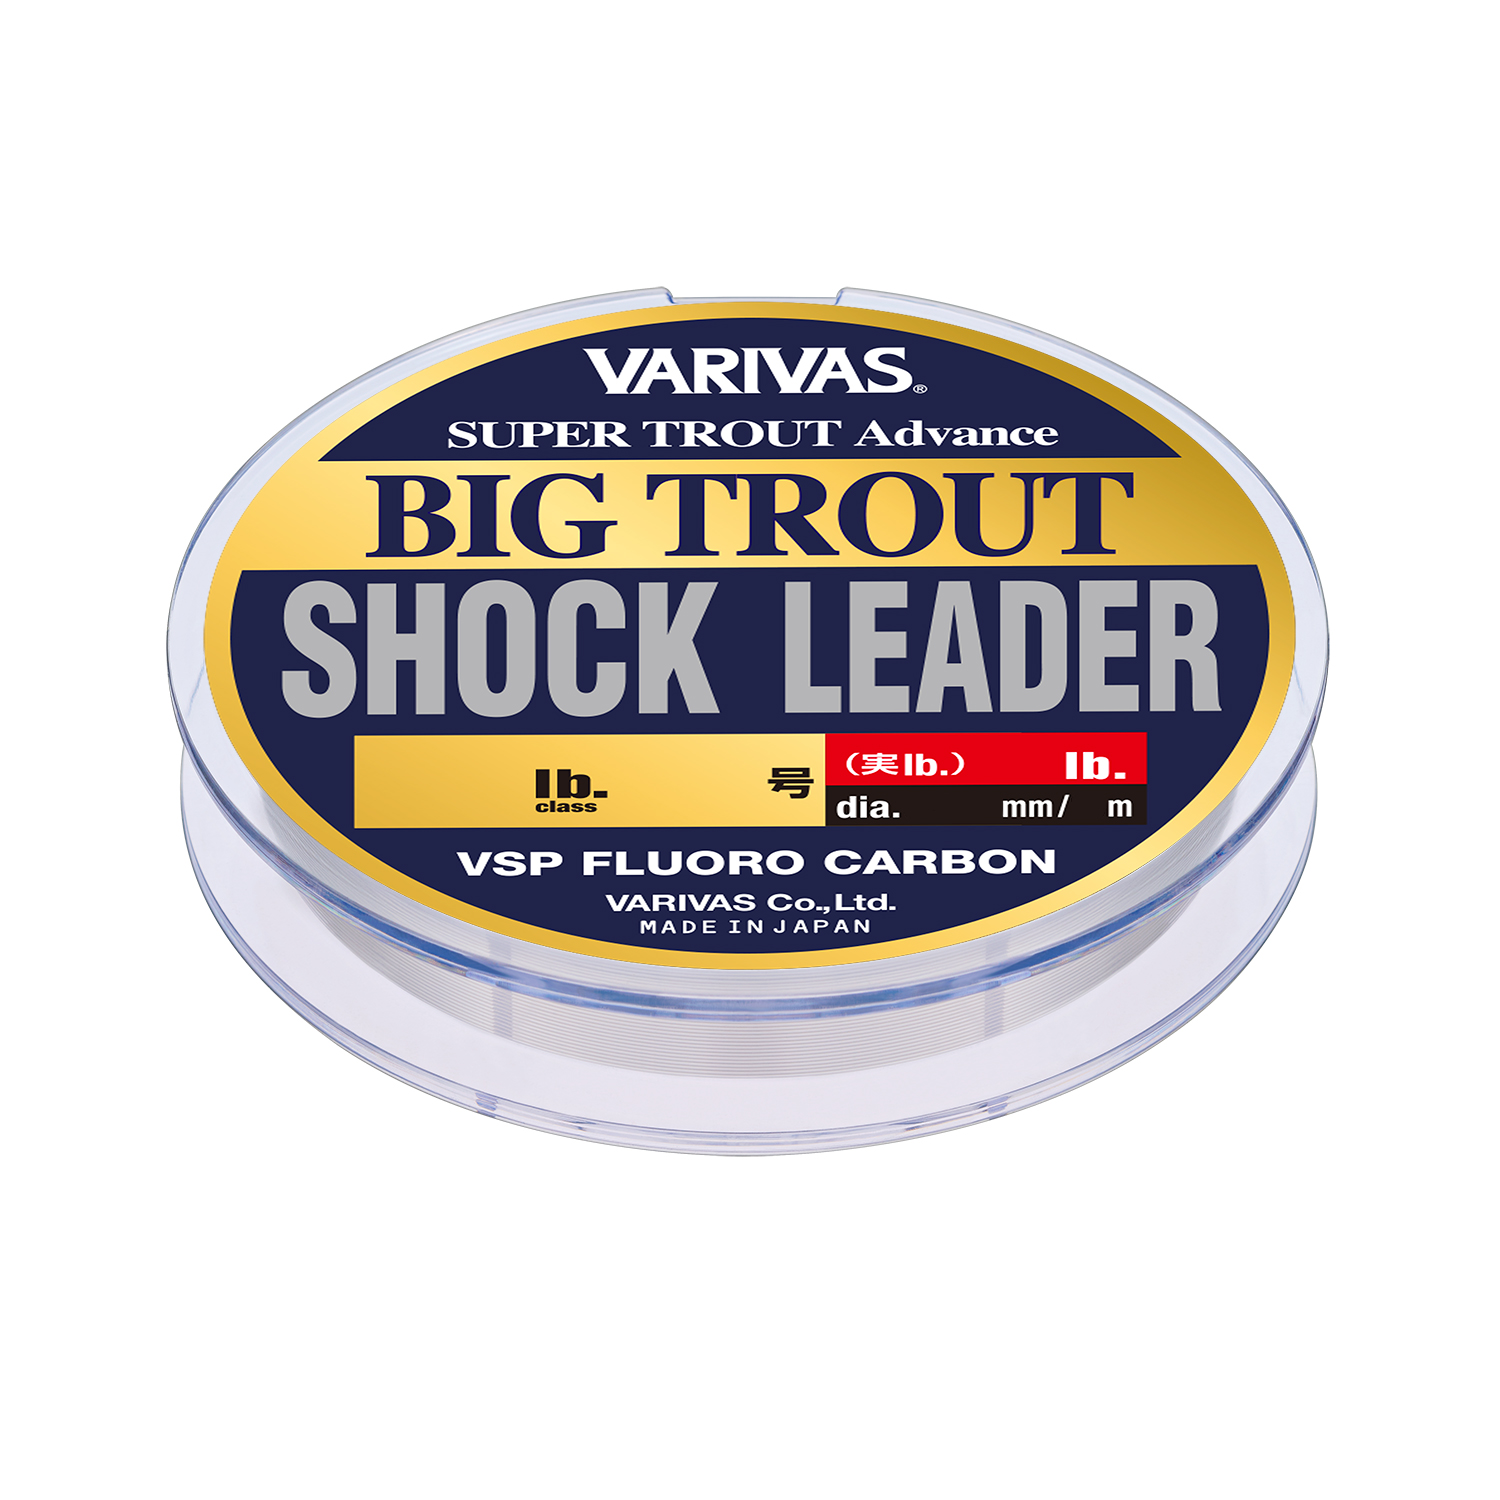 Filo Varivas Big Trout Shock Leader VSP FluoroCarbon 30m 7lb 0,215